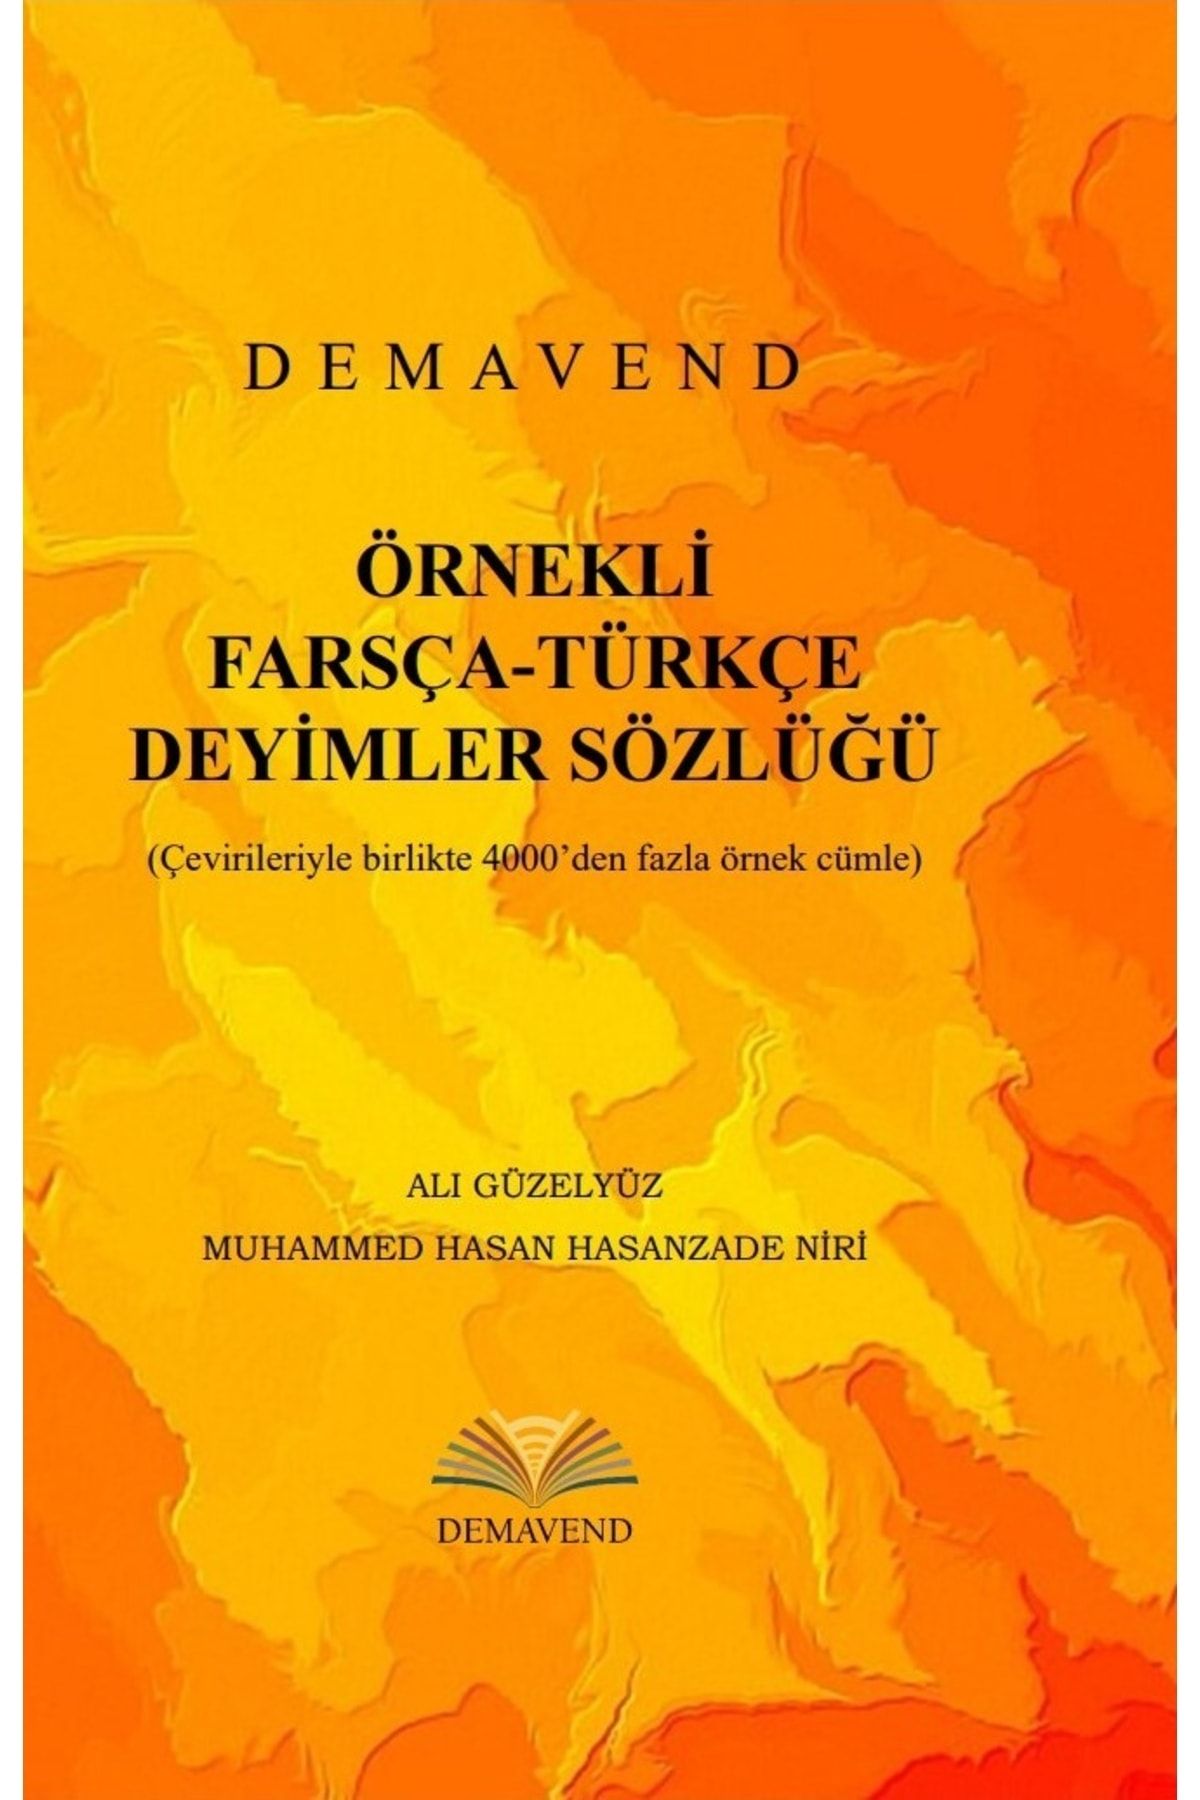 Demavend Örnekli Farsça-türkçe Deyimler Sözlüğü